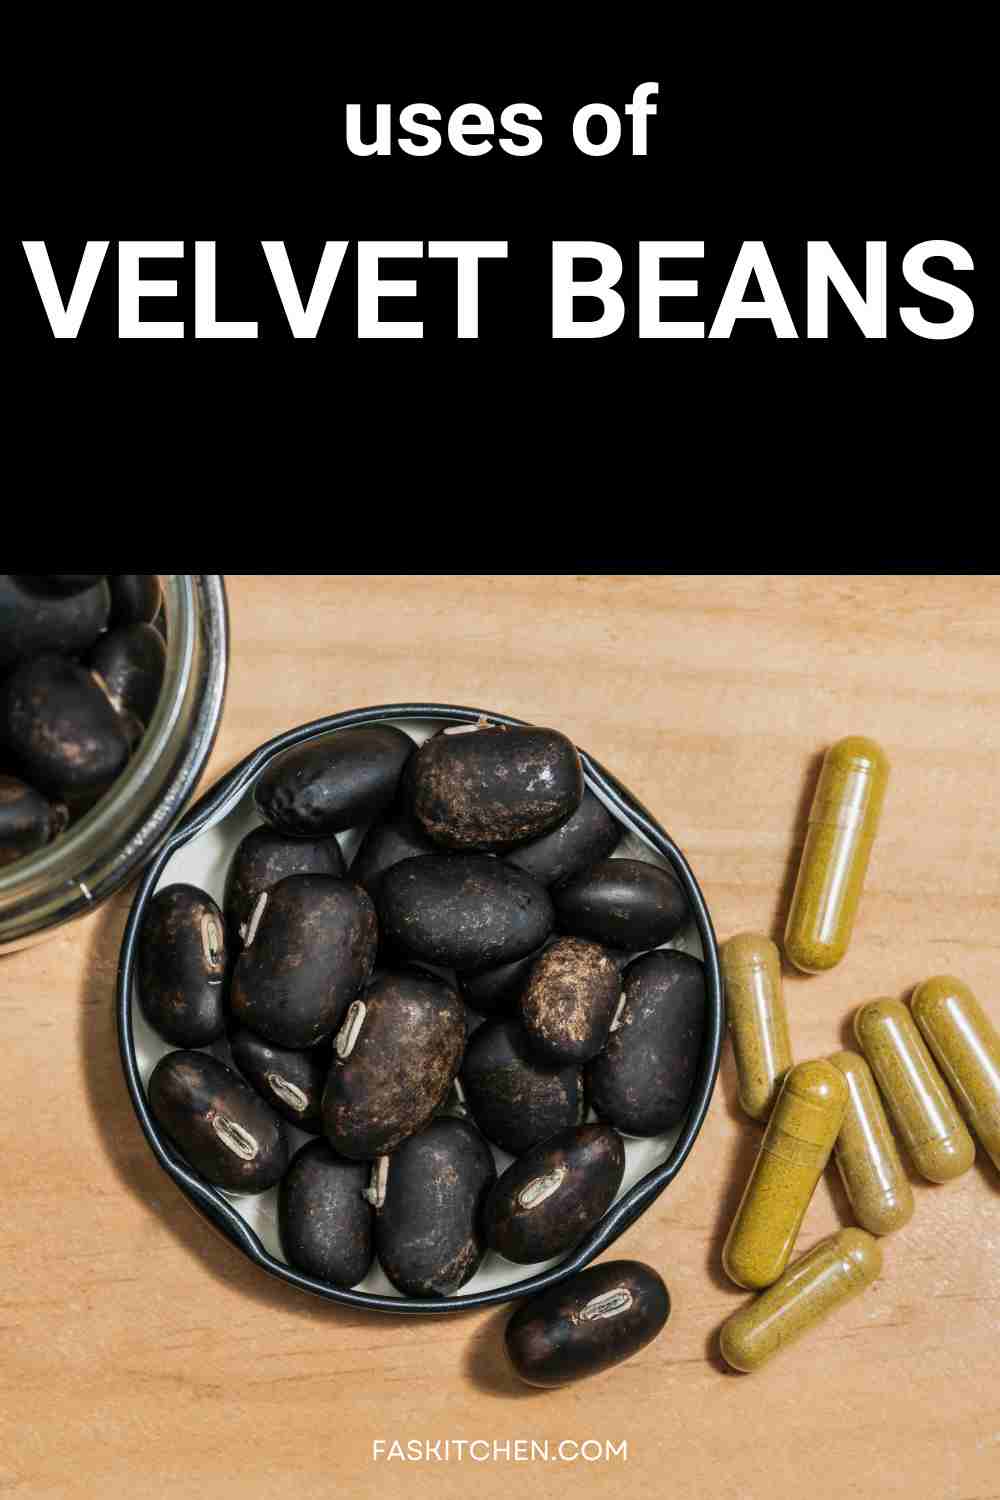 velvet beans uses